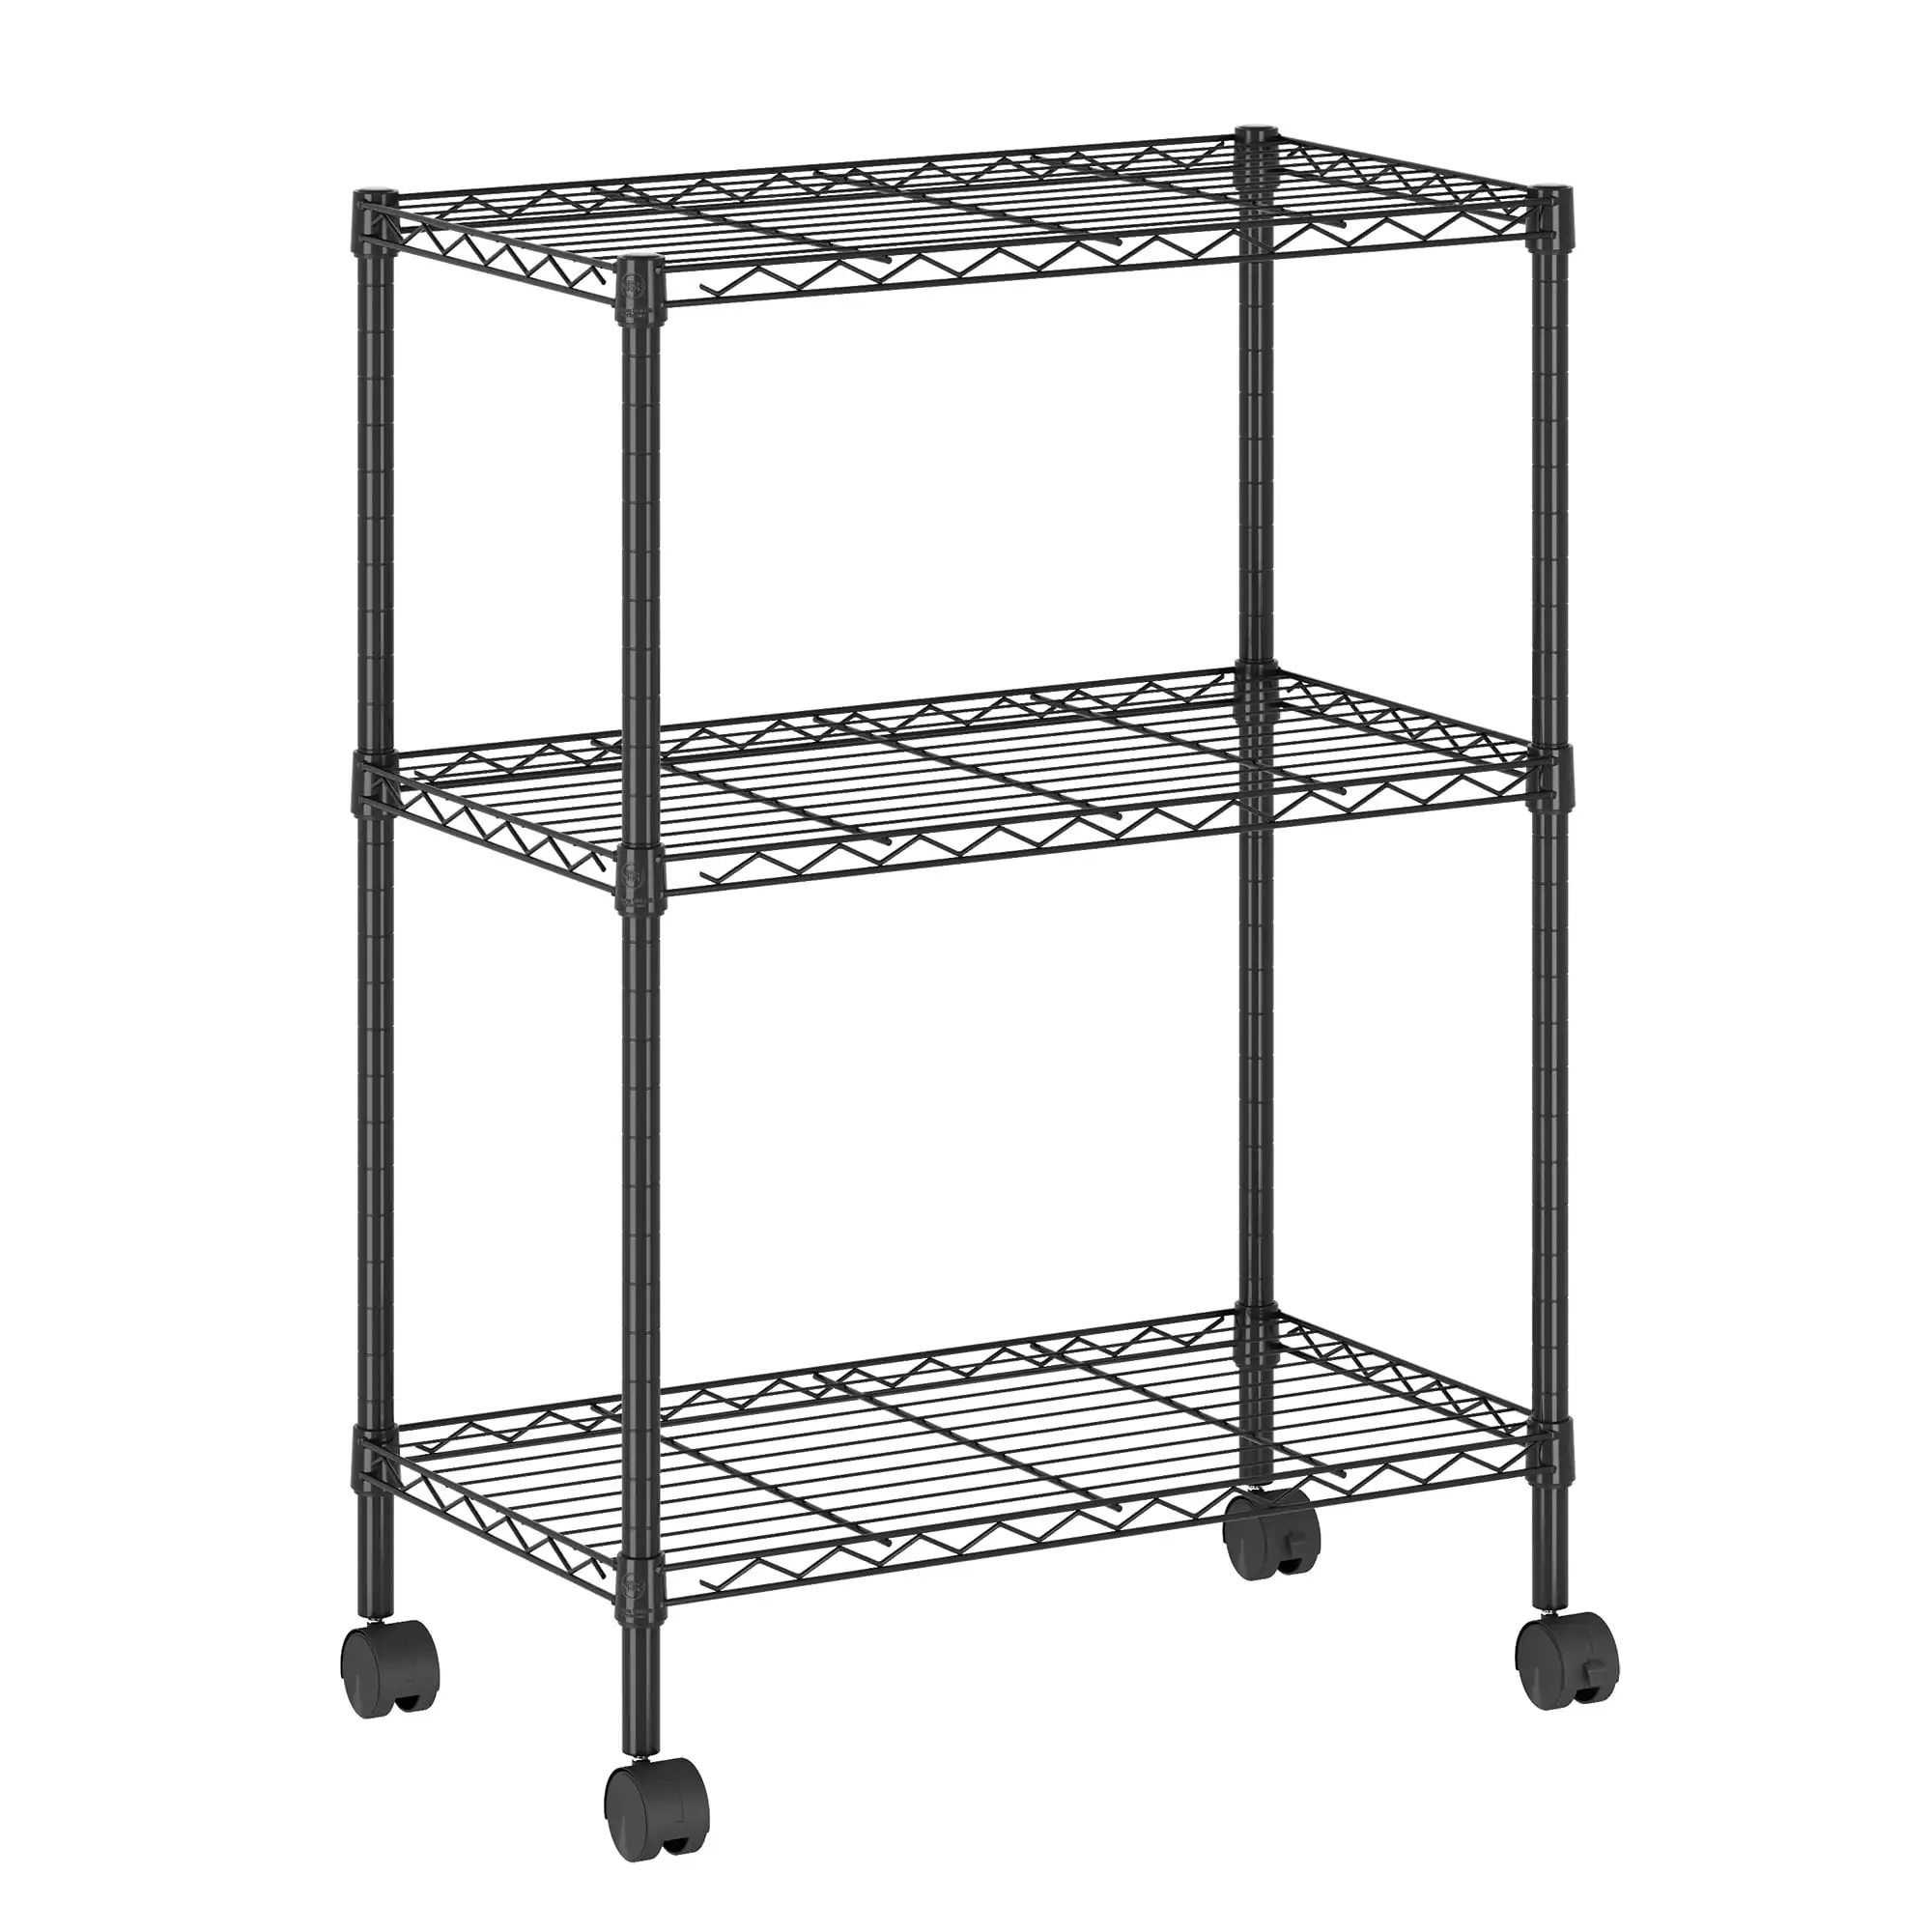 

Furinno Wayar 3-Tier Metal Storage Shelf Rack Cart with Casters, 23 x 13 x 30, Black